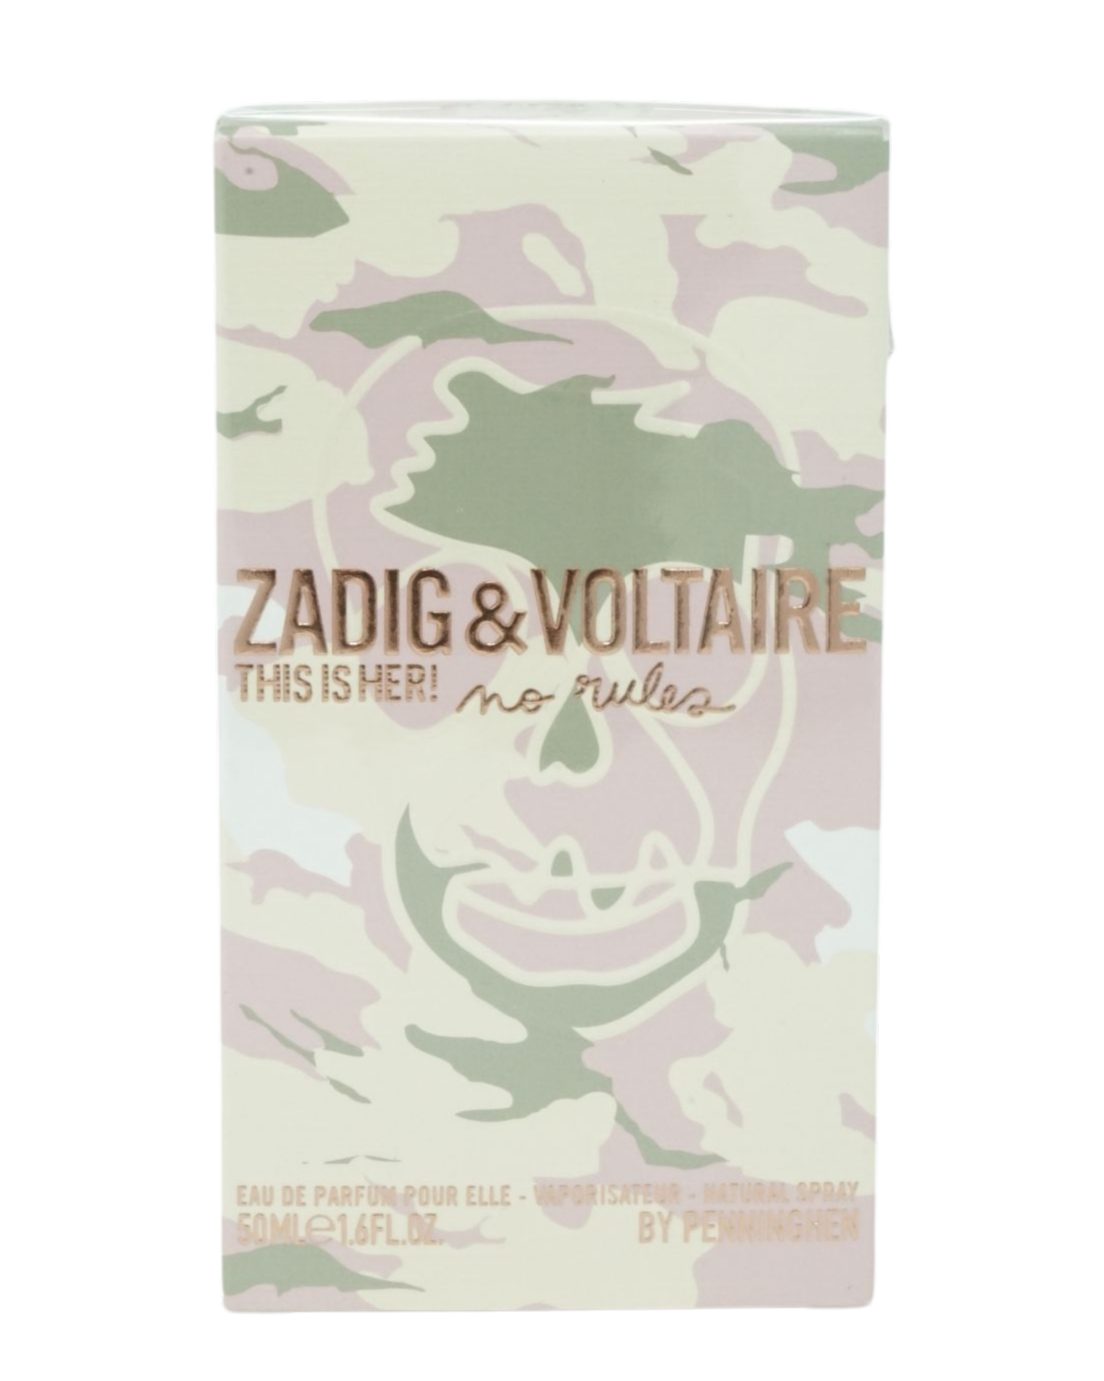 ZADIG & VOLTAIRE Eau de Parfum Zadig & Voltaire This is her ! nor rules Eau de Parfum 50ml